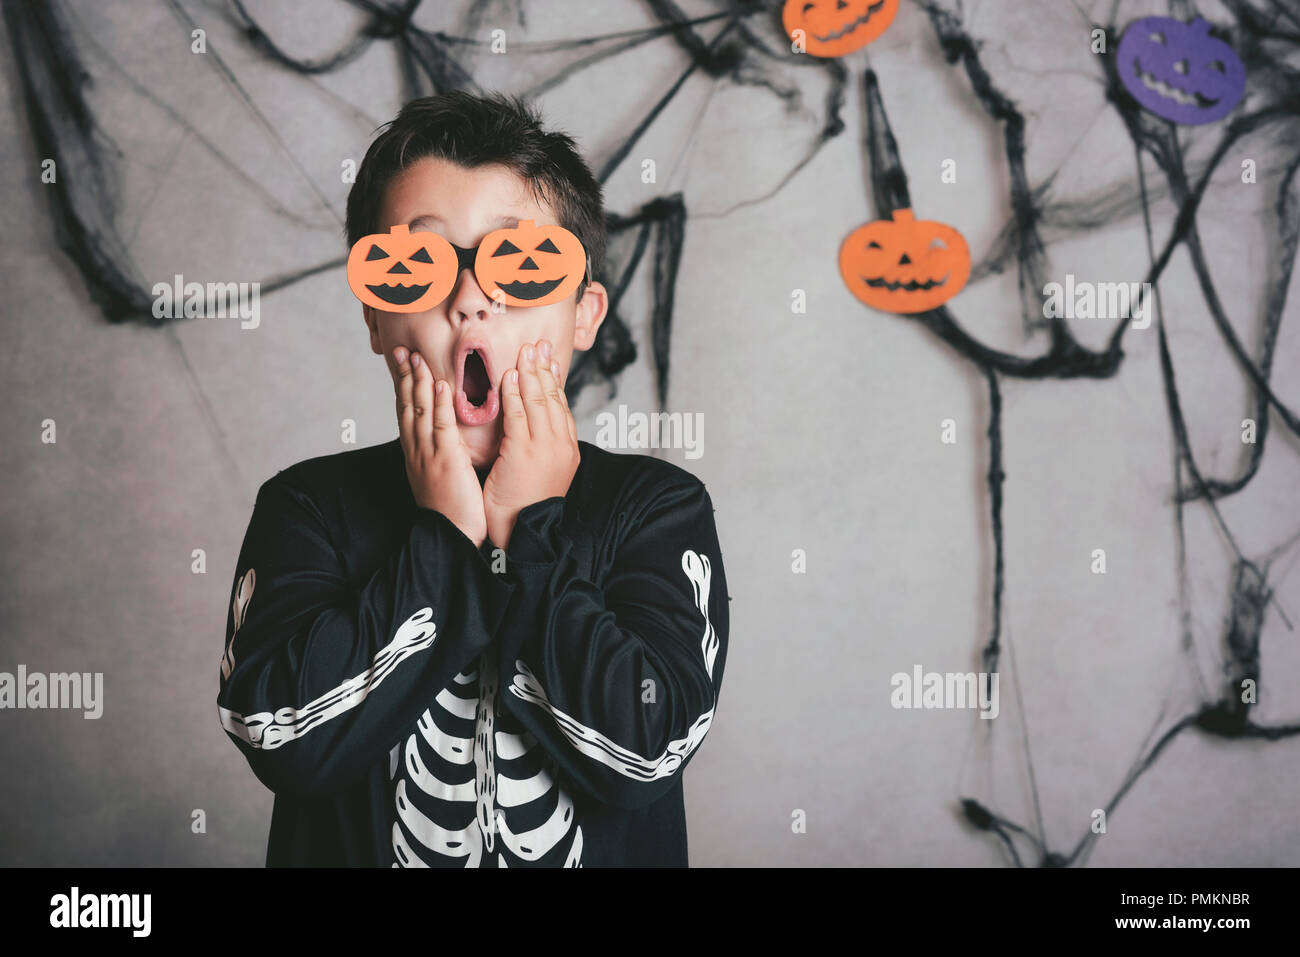 Ragazzo in costume di scheletro a festa di Halloween Foto Stock